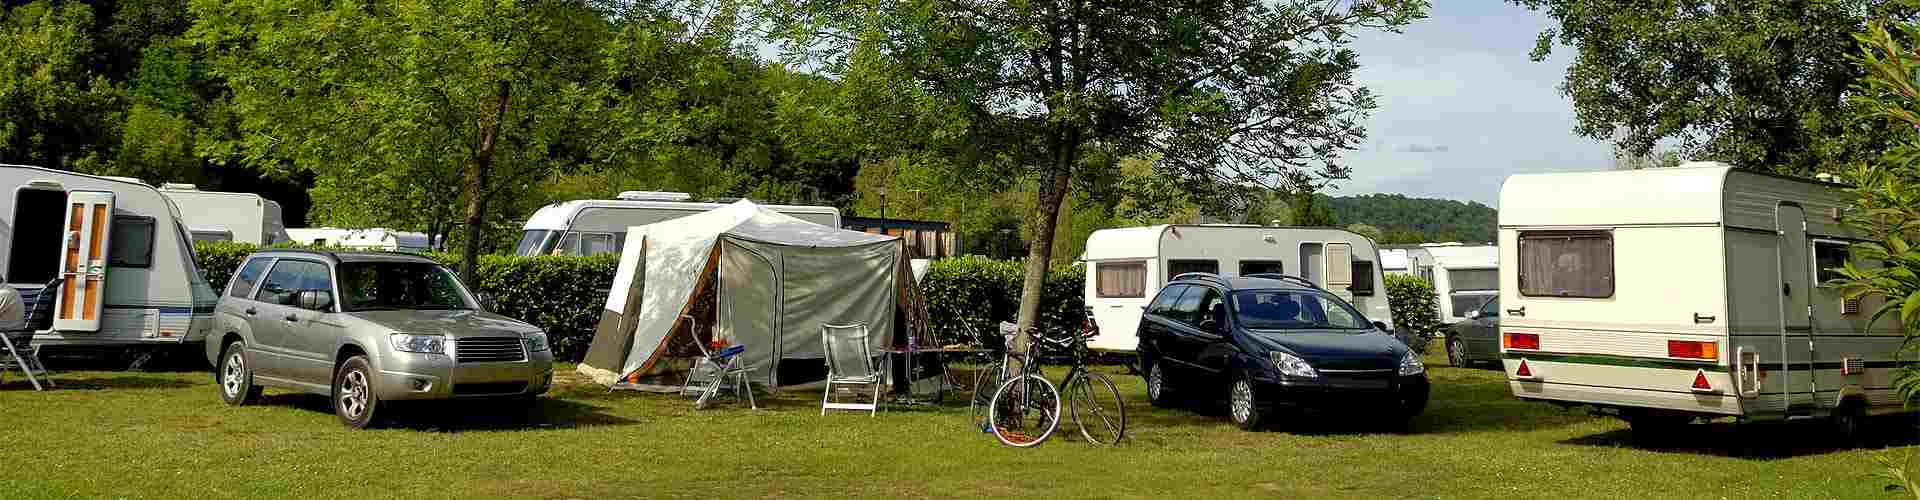 Campings y bungalows en Tejerizas
           
           


          
          
          


